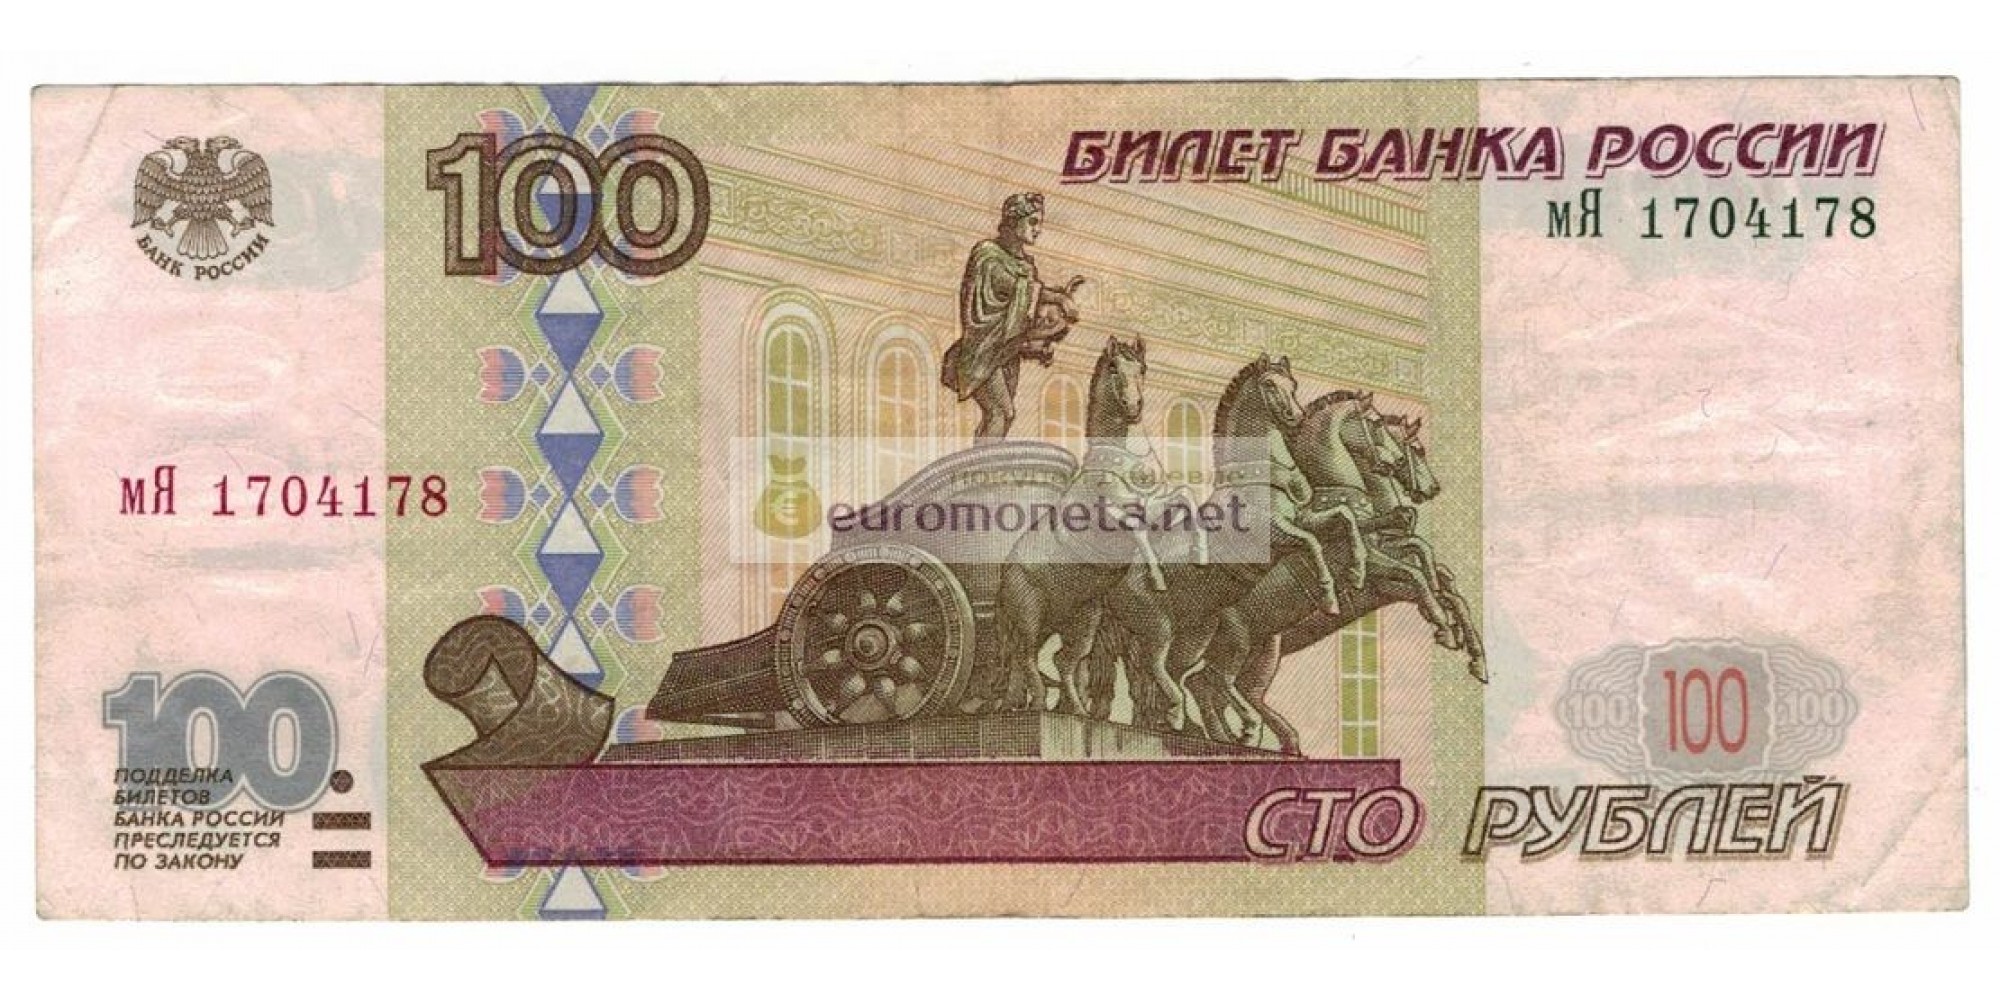 Россия 100 рублей 1997 год без модификации серия мЯ 1704178